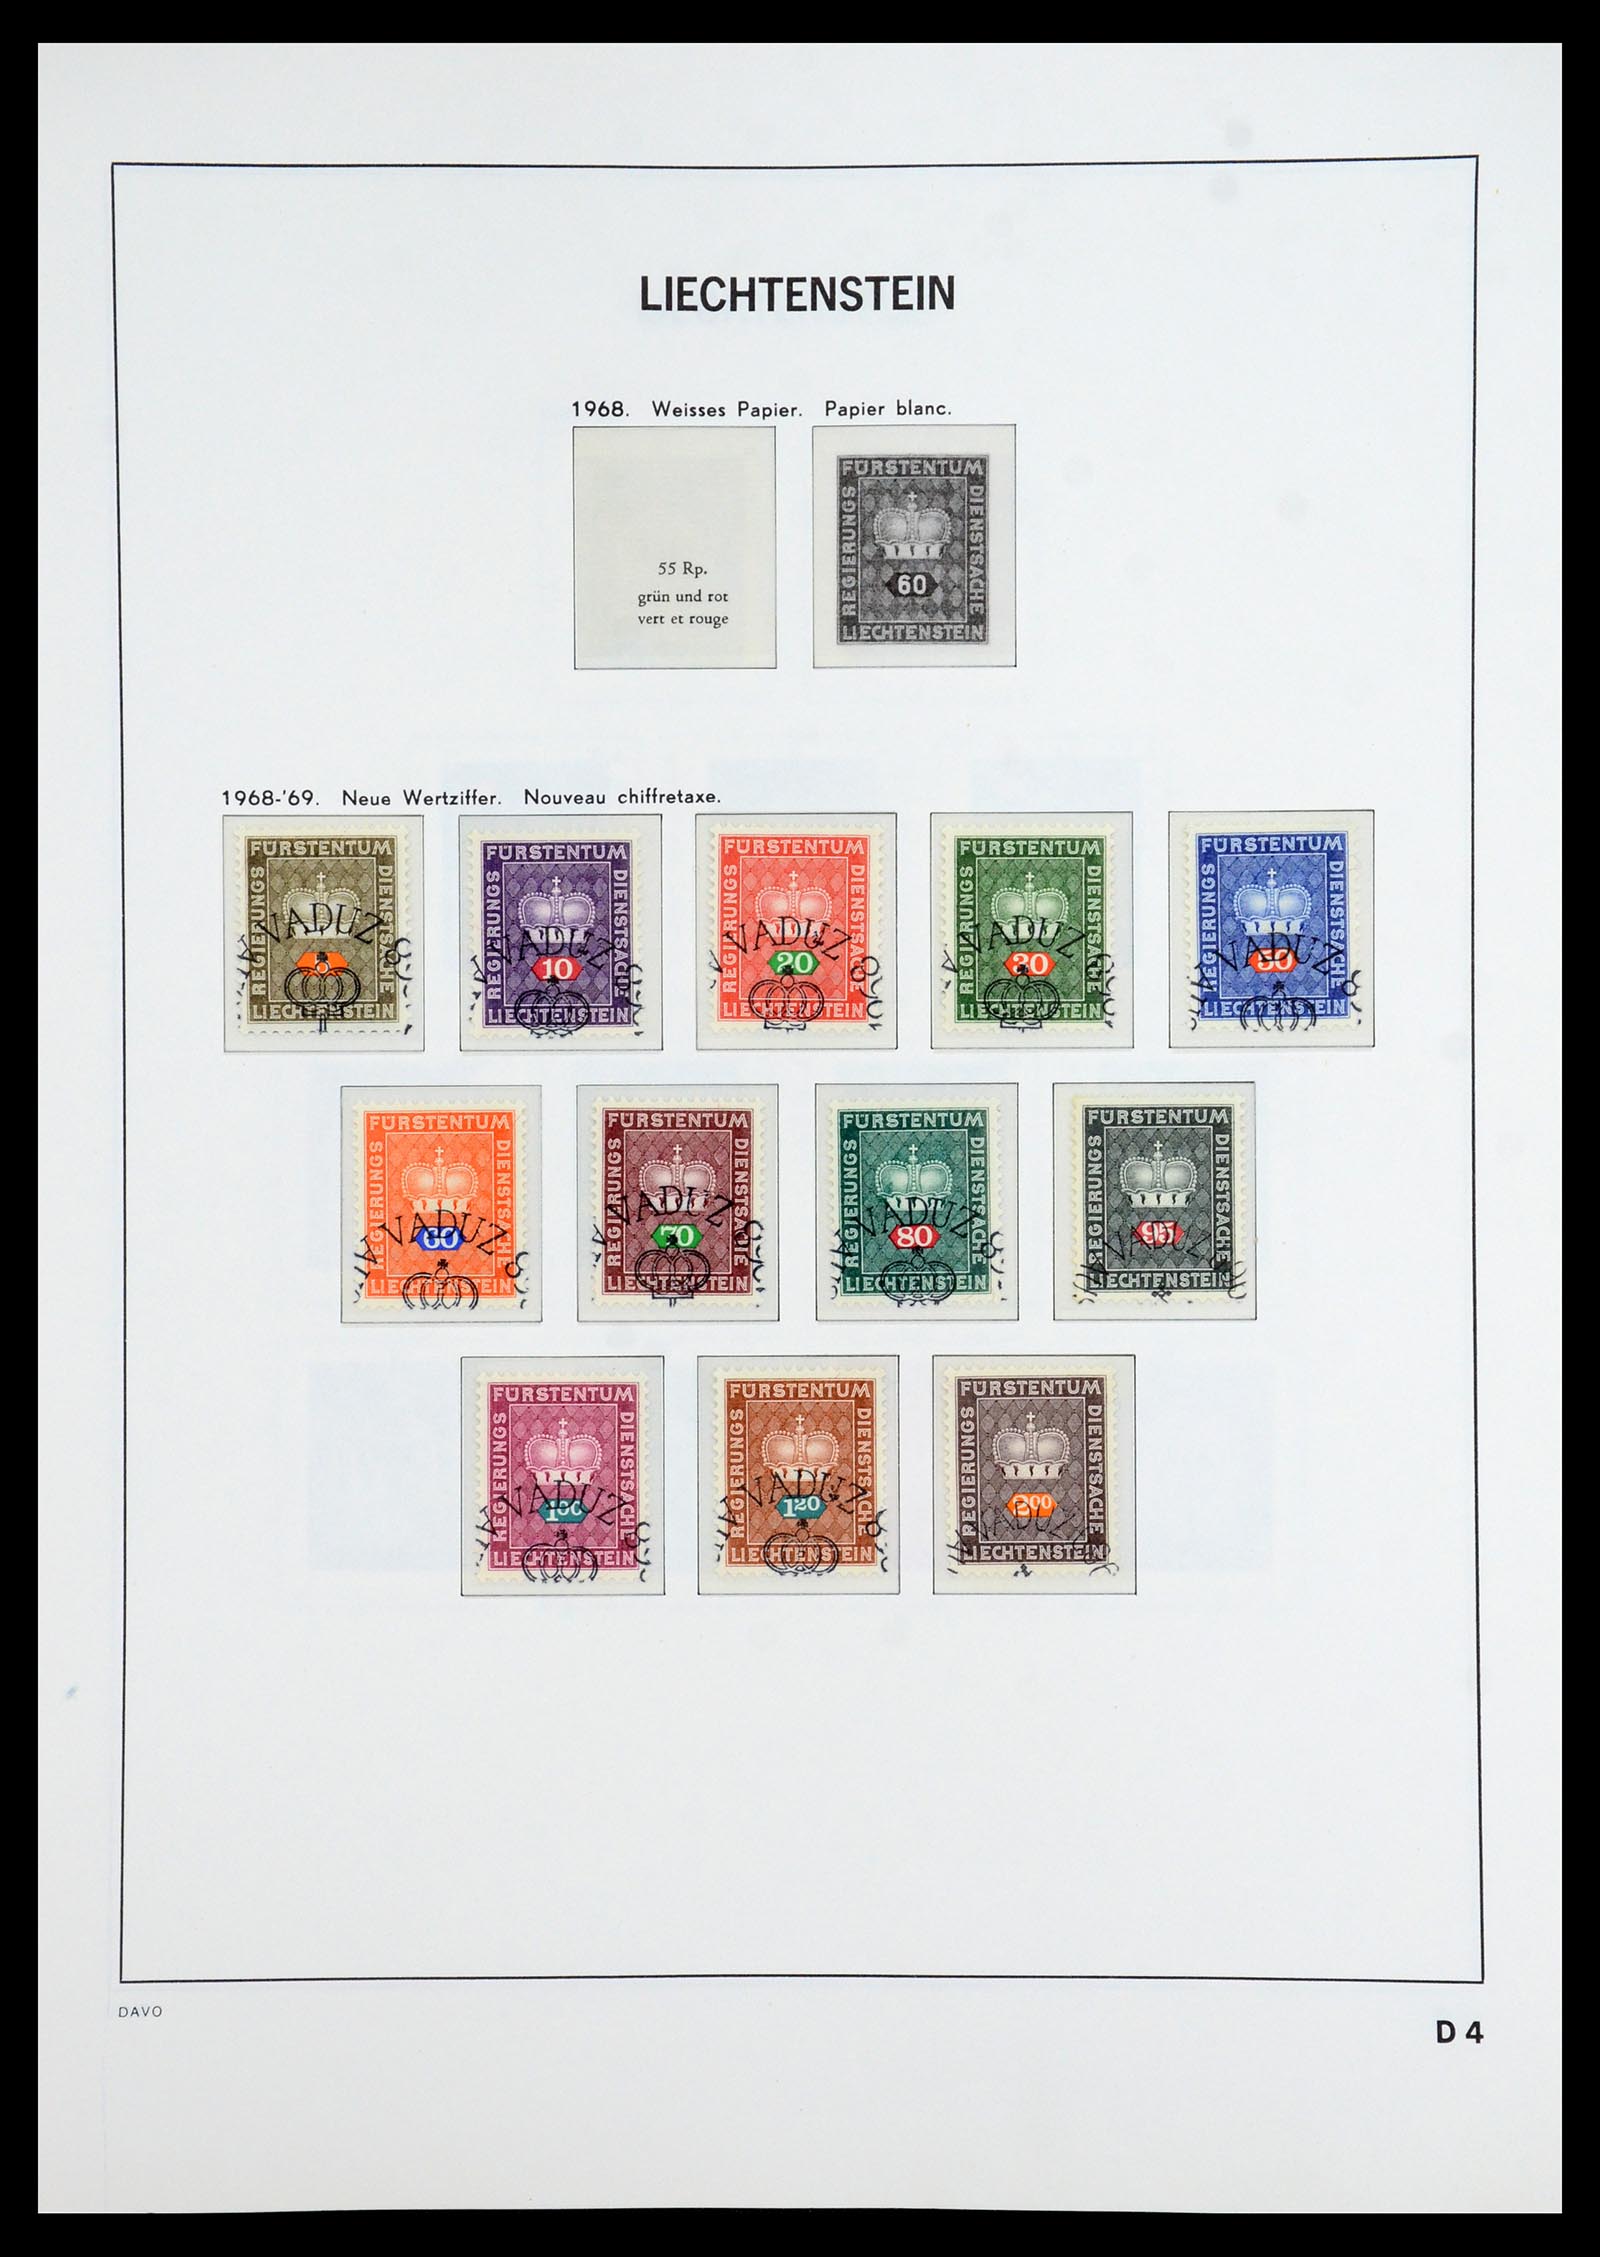 35896 102 - Stamp Collection 35896 Liechtenstein 1912-1990.